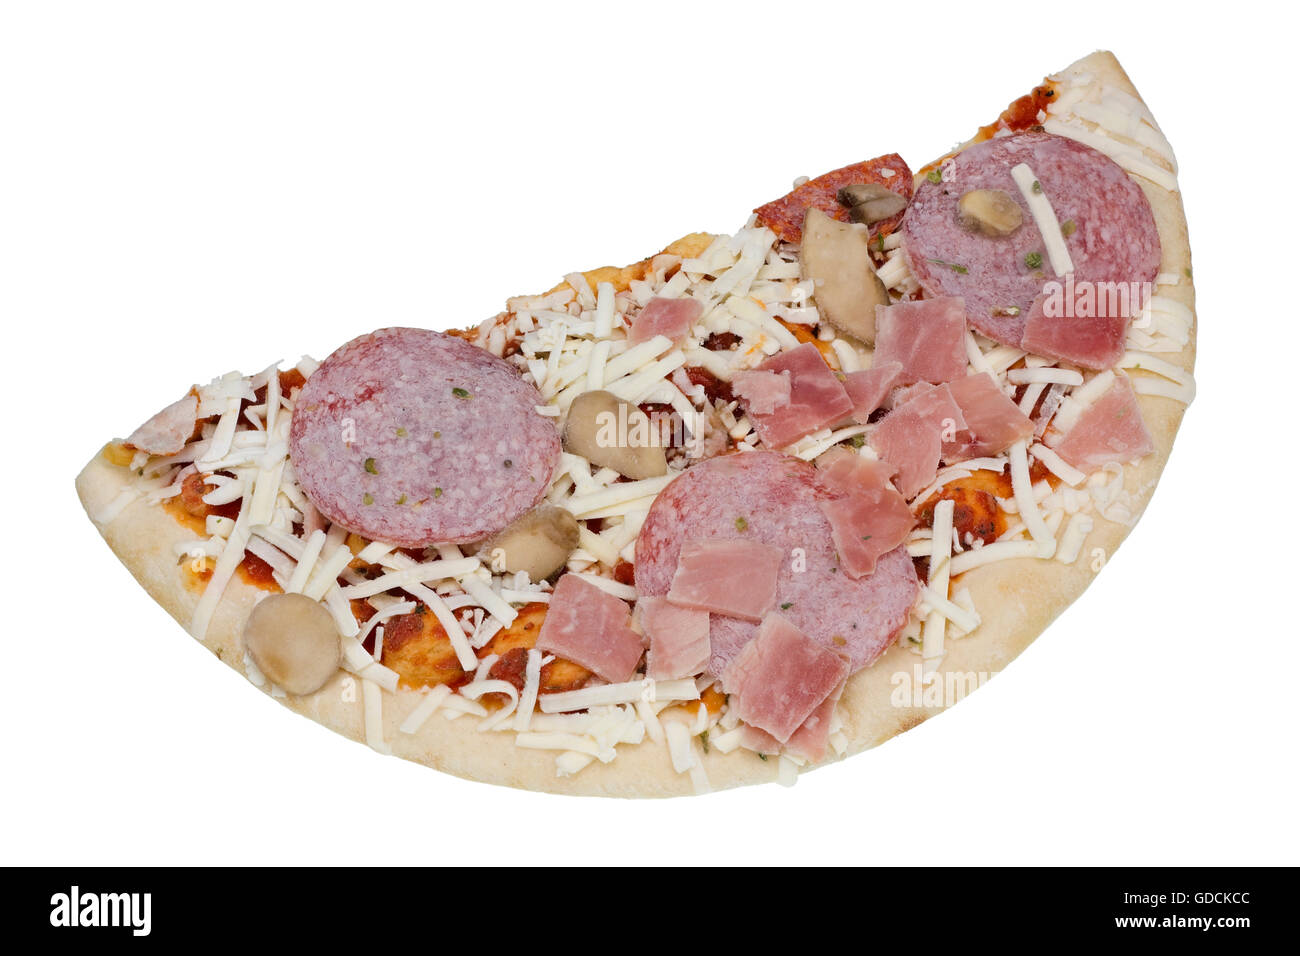 La moitié de la production de masse congelée pizza aux champignons, de salami, de jambon et de mozzarella. Isolated on white Banque D'Images